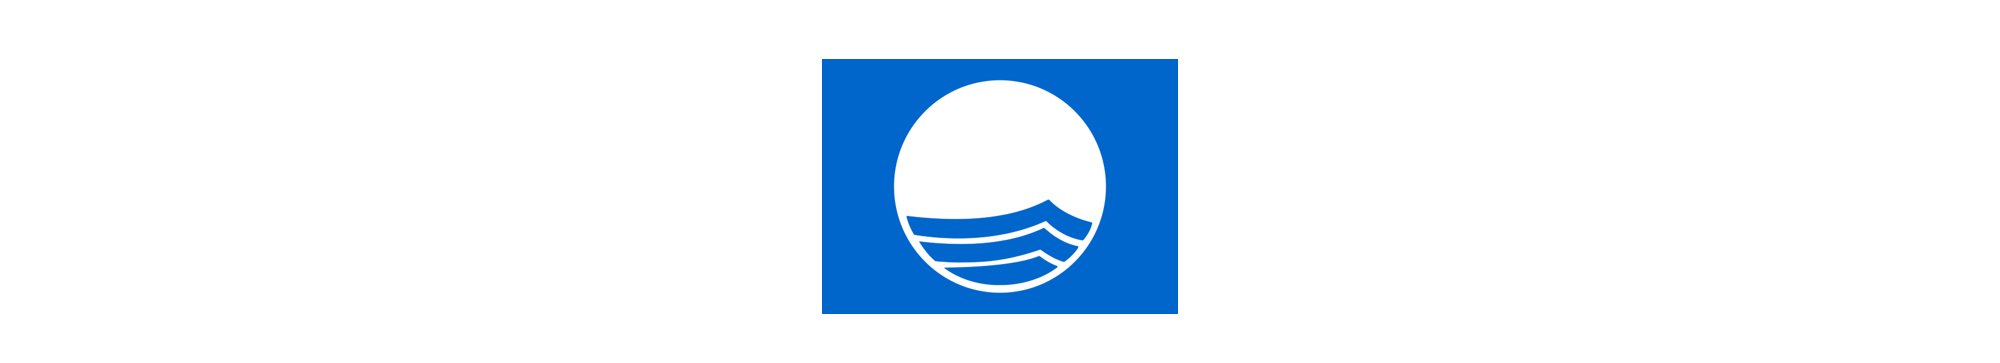 Tudo Azul – 22 praias brasileiras com Bandeira Azul